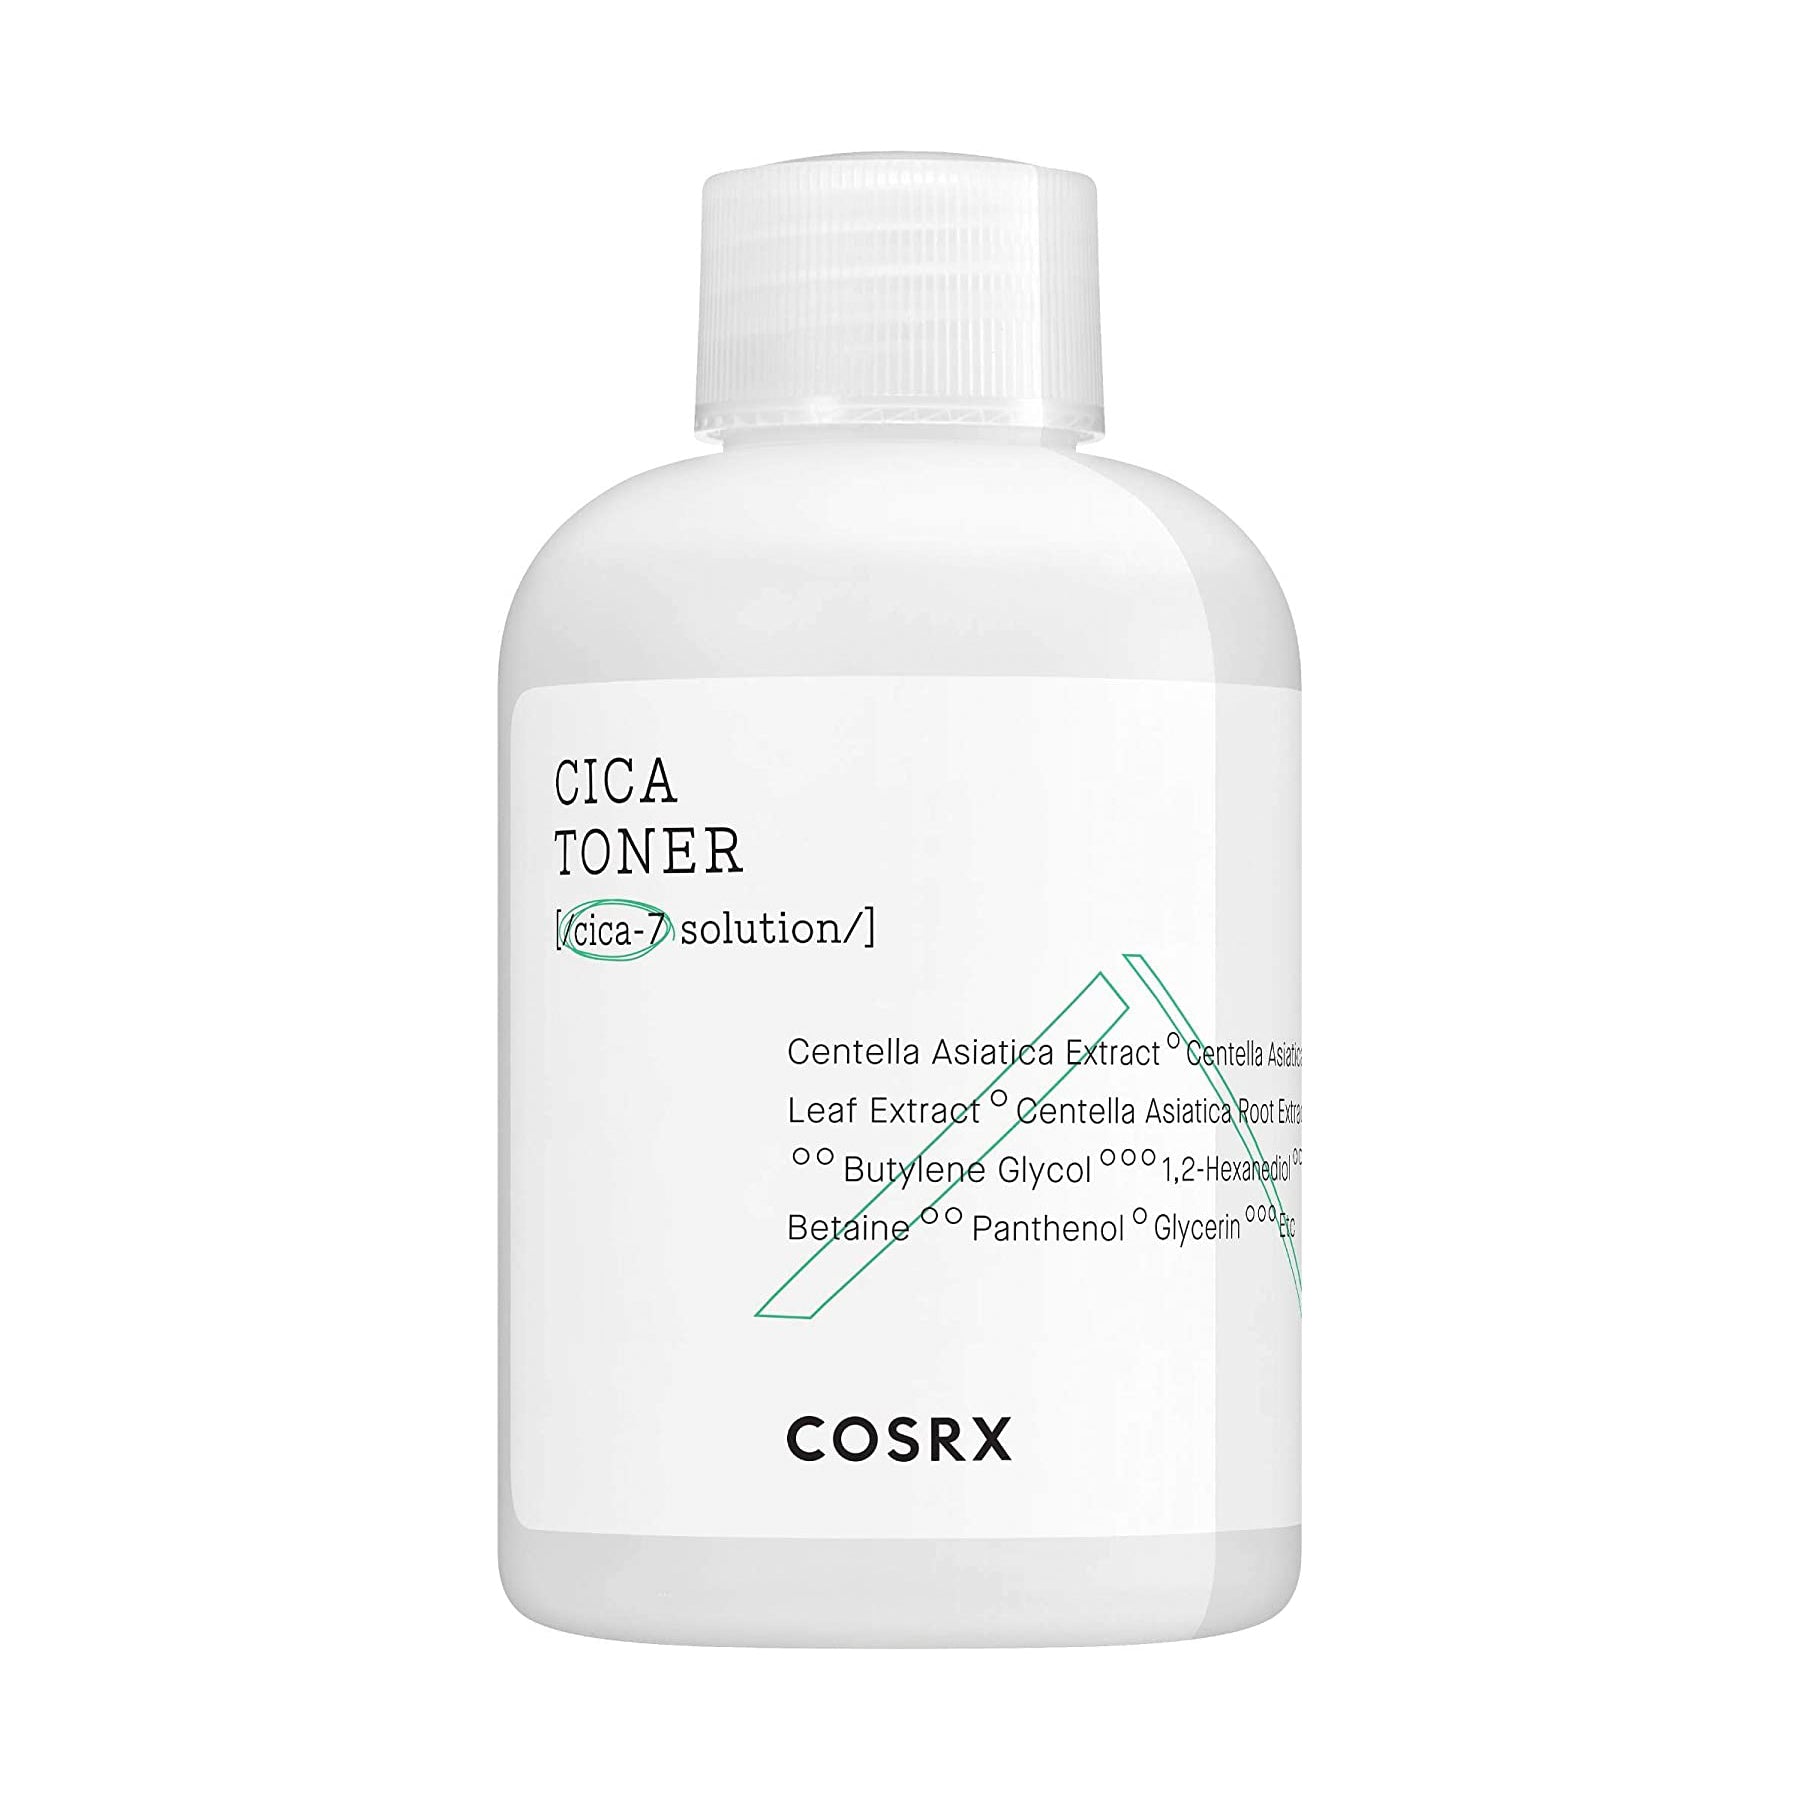 Cosrx Pure Fit Cica Toner Beauty Cosrx   